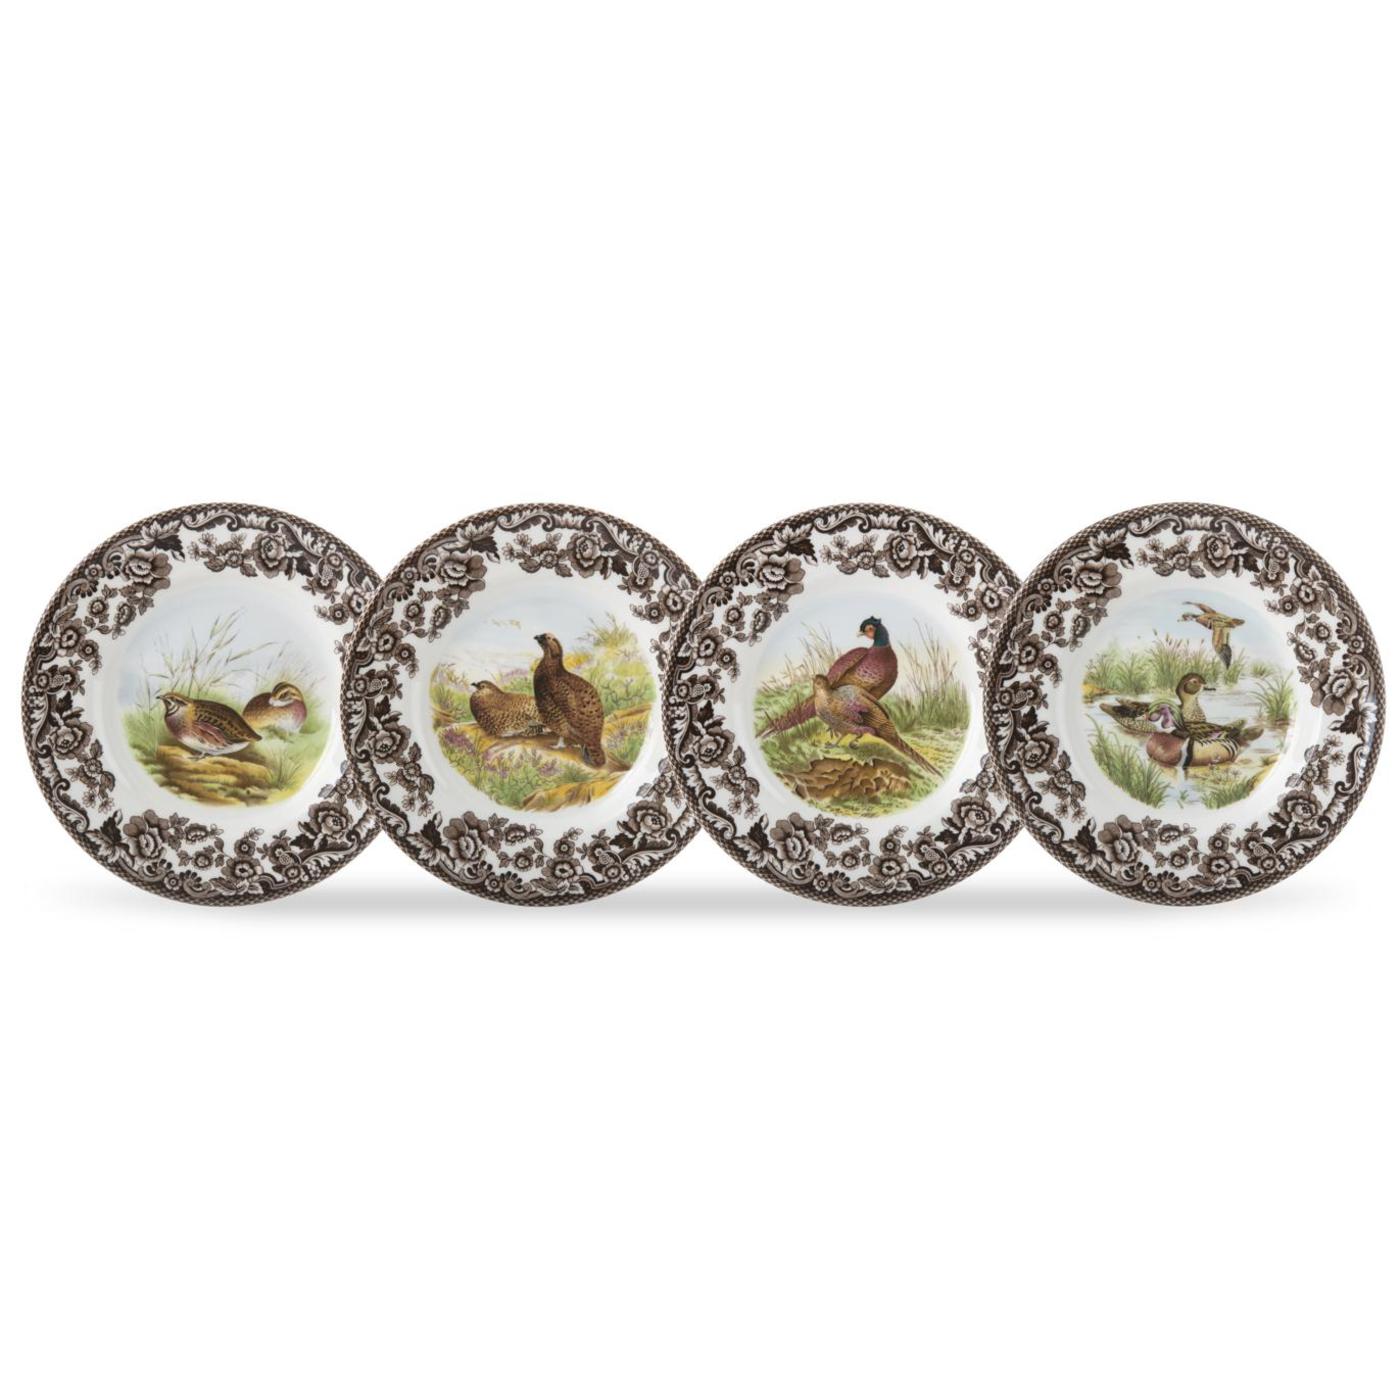 Spode Woodland Canapé Plates, Birds, Set of 4